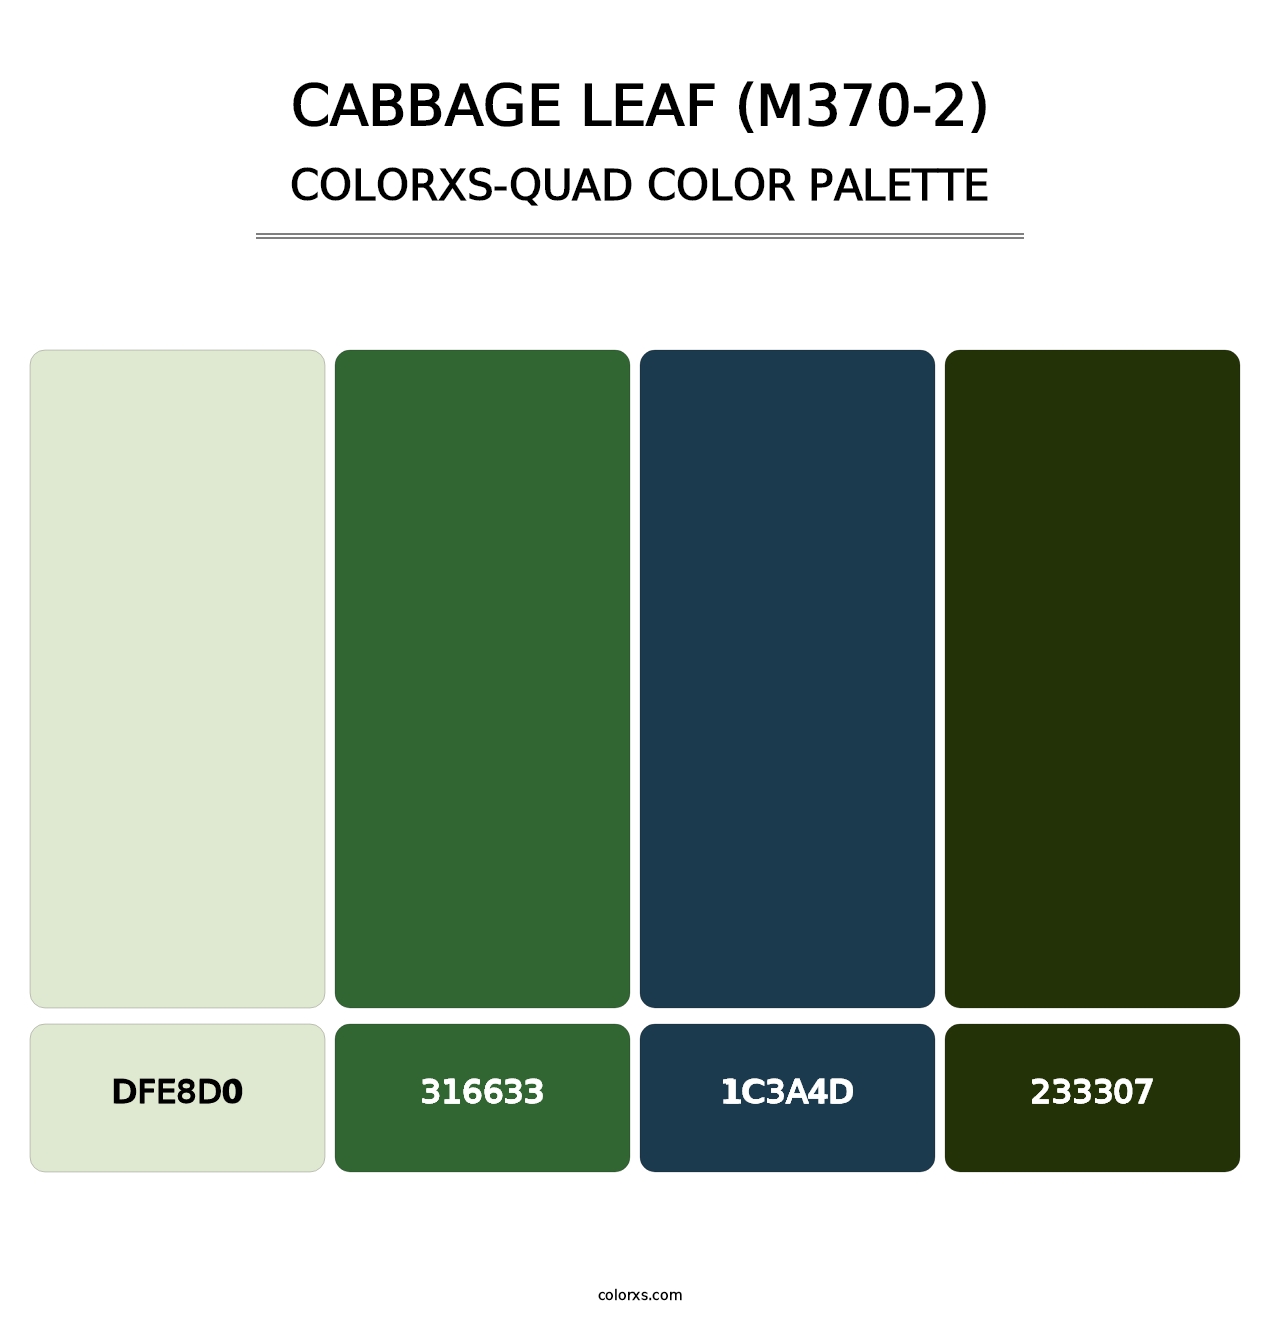 Cabbage Leaf (M370-2) - Colorxs Quad Palette